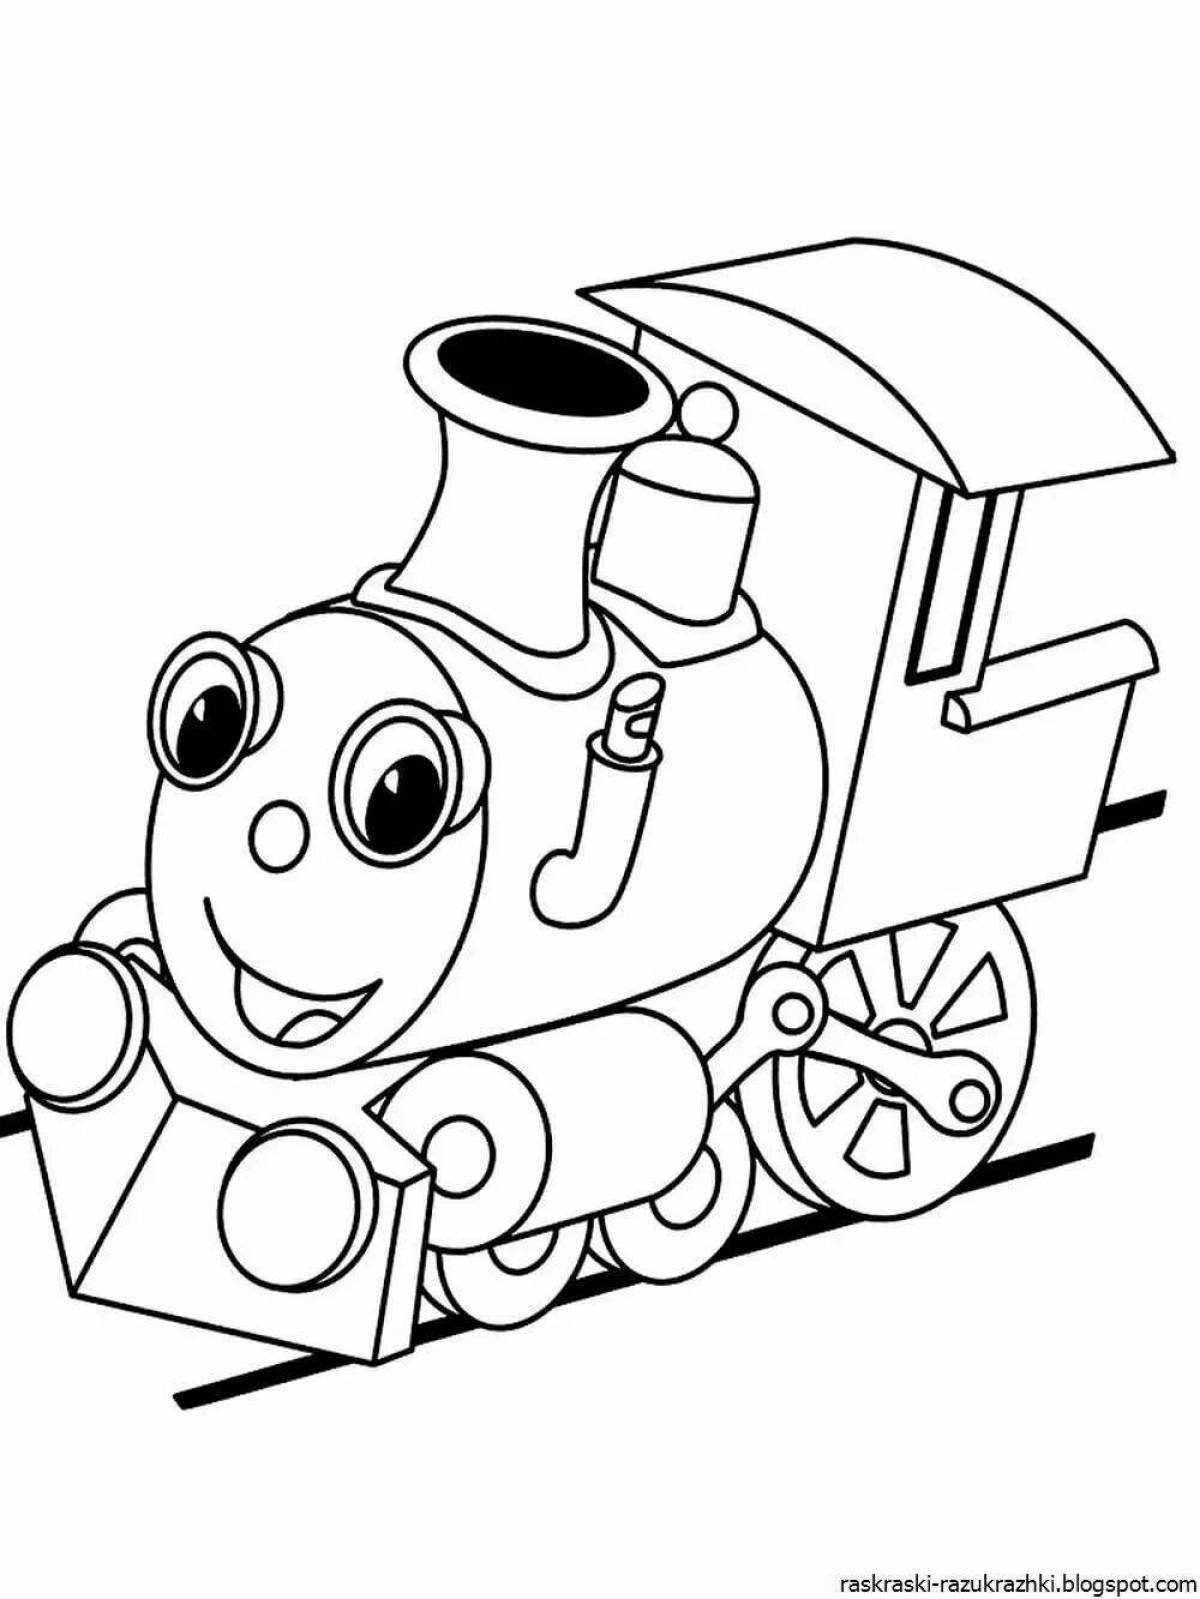 Цветная игривая детская раскраска поезда